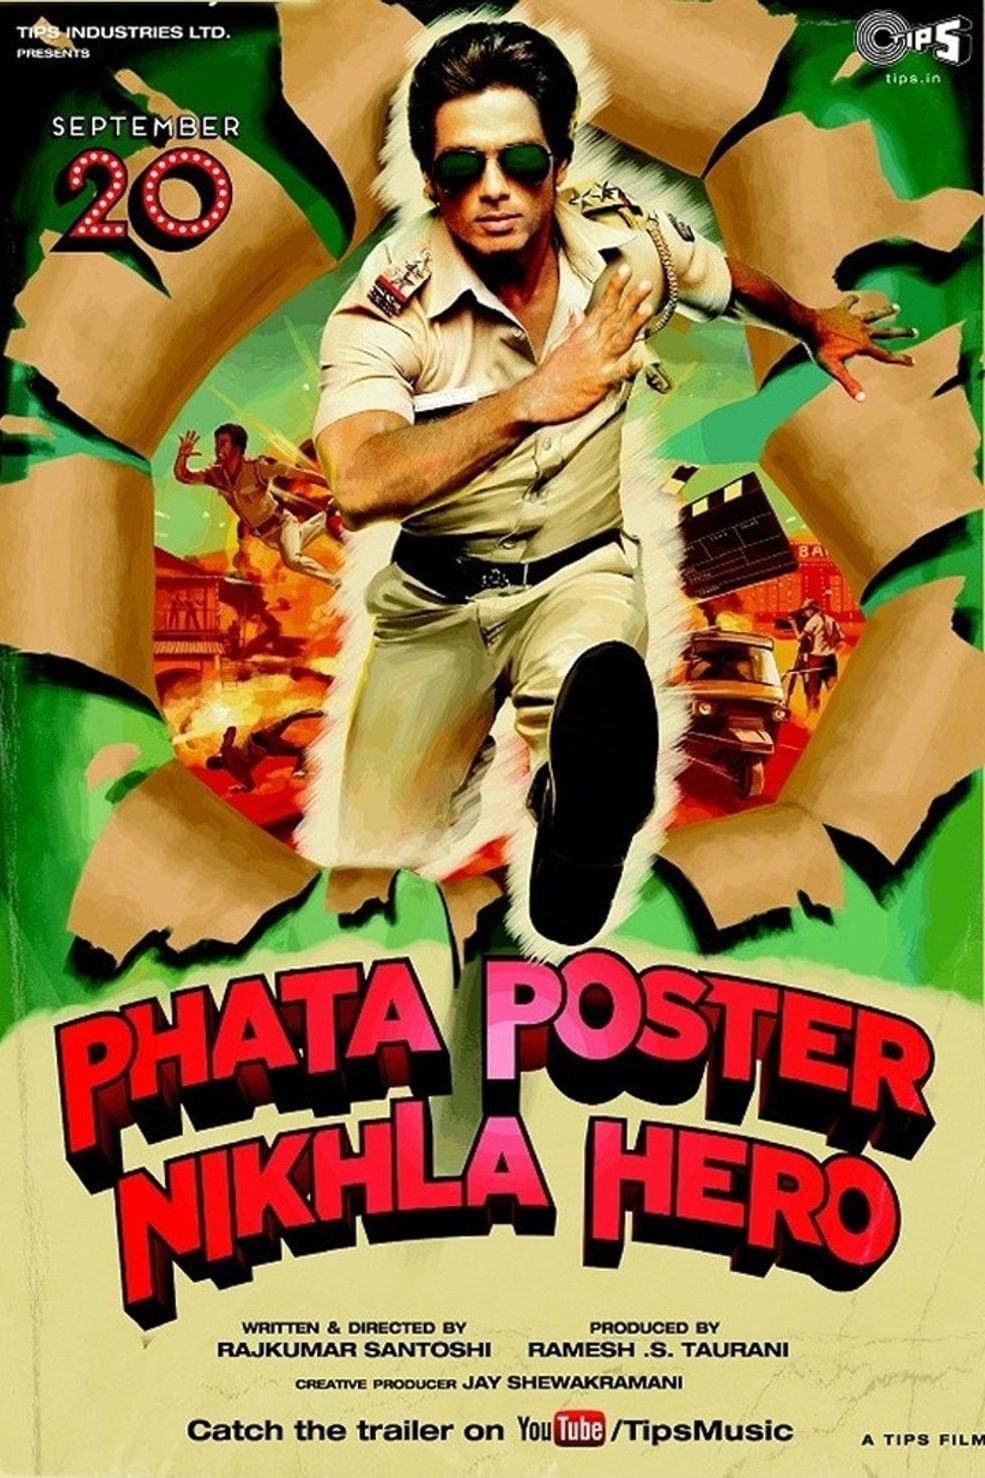 Poster for the movie "Phata Poster Nikhla Hero"